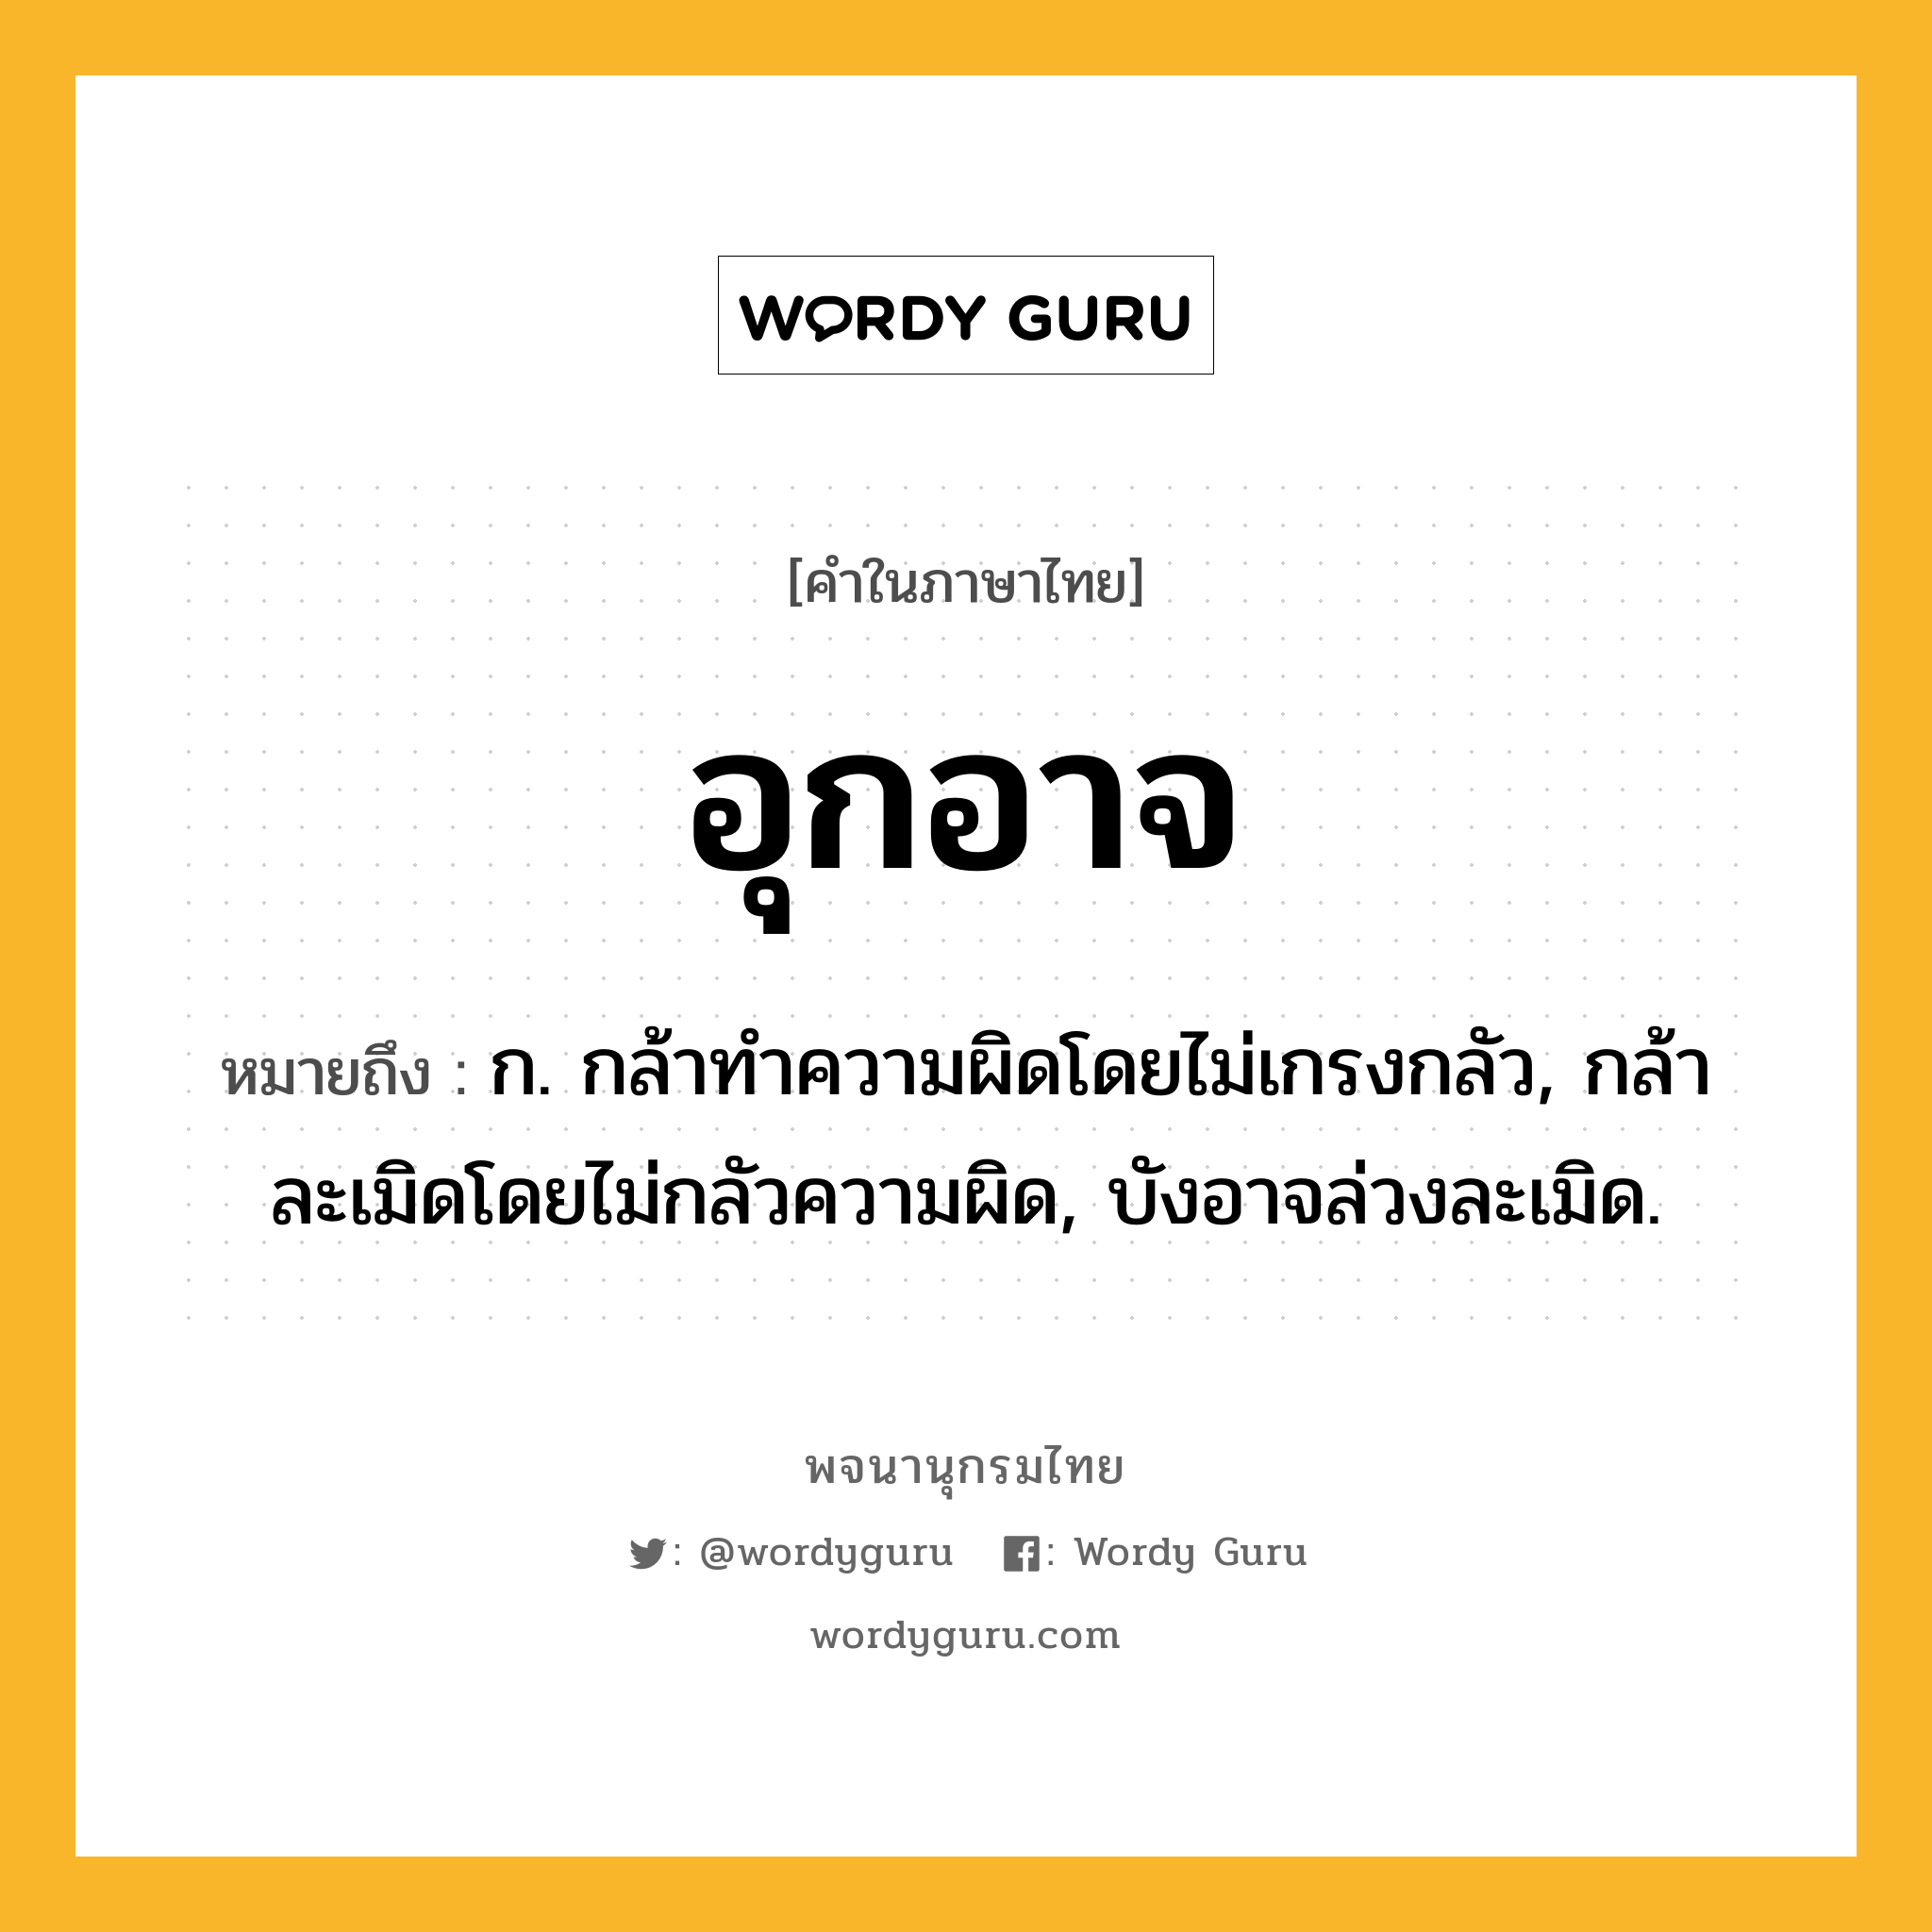 อุกอาจ ความหมาย หมายถึงอะไร?, คำในภาษาไทย อุกอาจ หมายถึง ก. กล้าทําความผิดโดยไม่เกรงกลัว, กล้าละเมิดโดยไม่กลัวความผิด, บังอาจล่วงละเมิด.